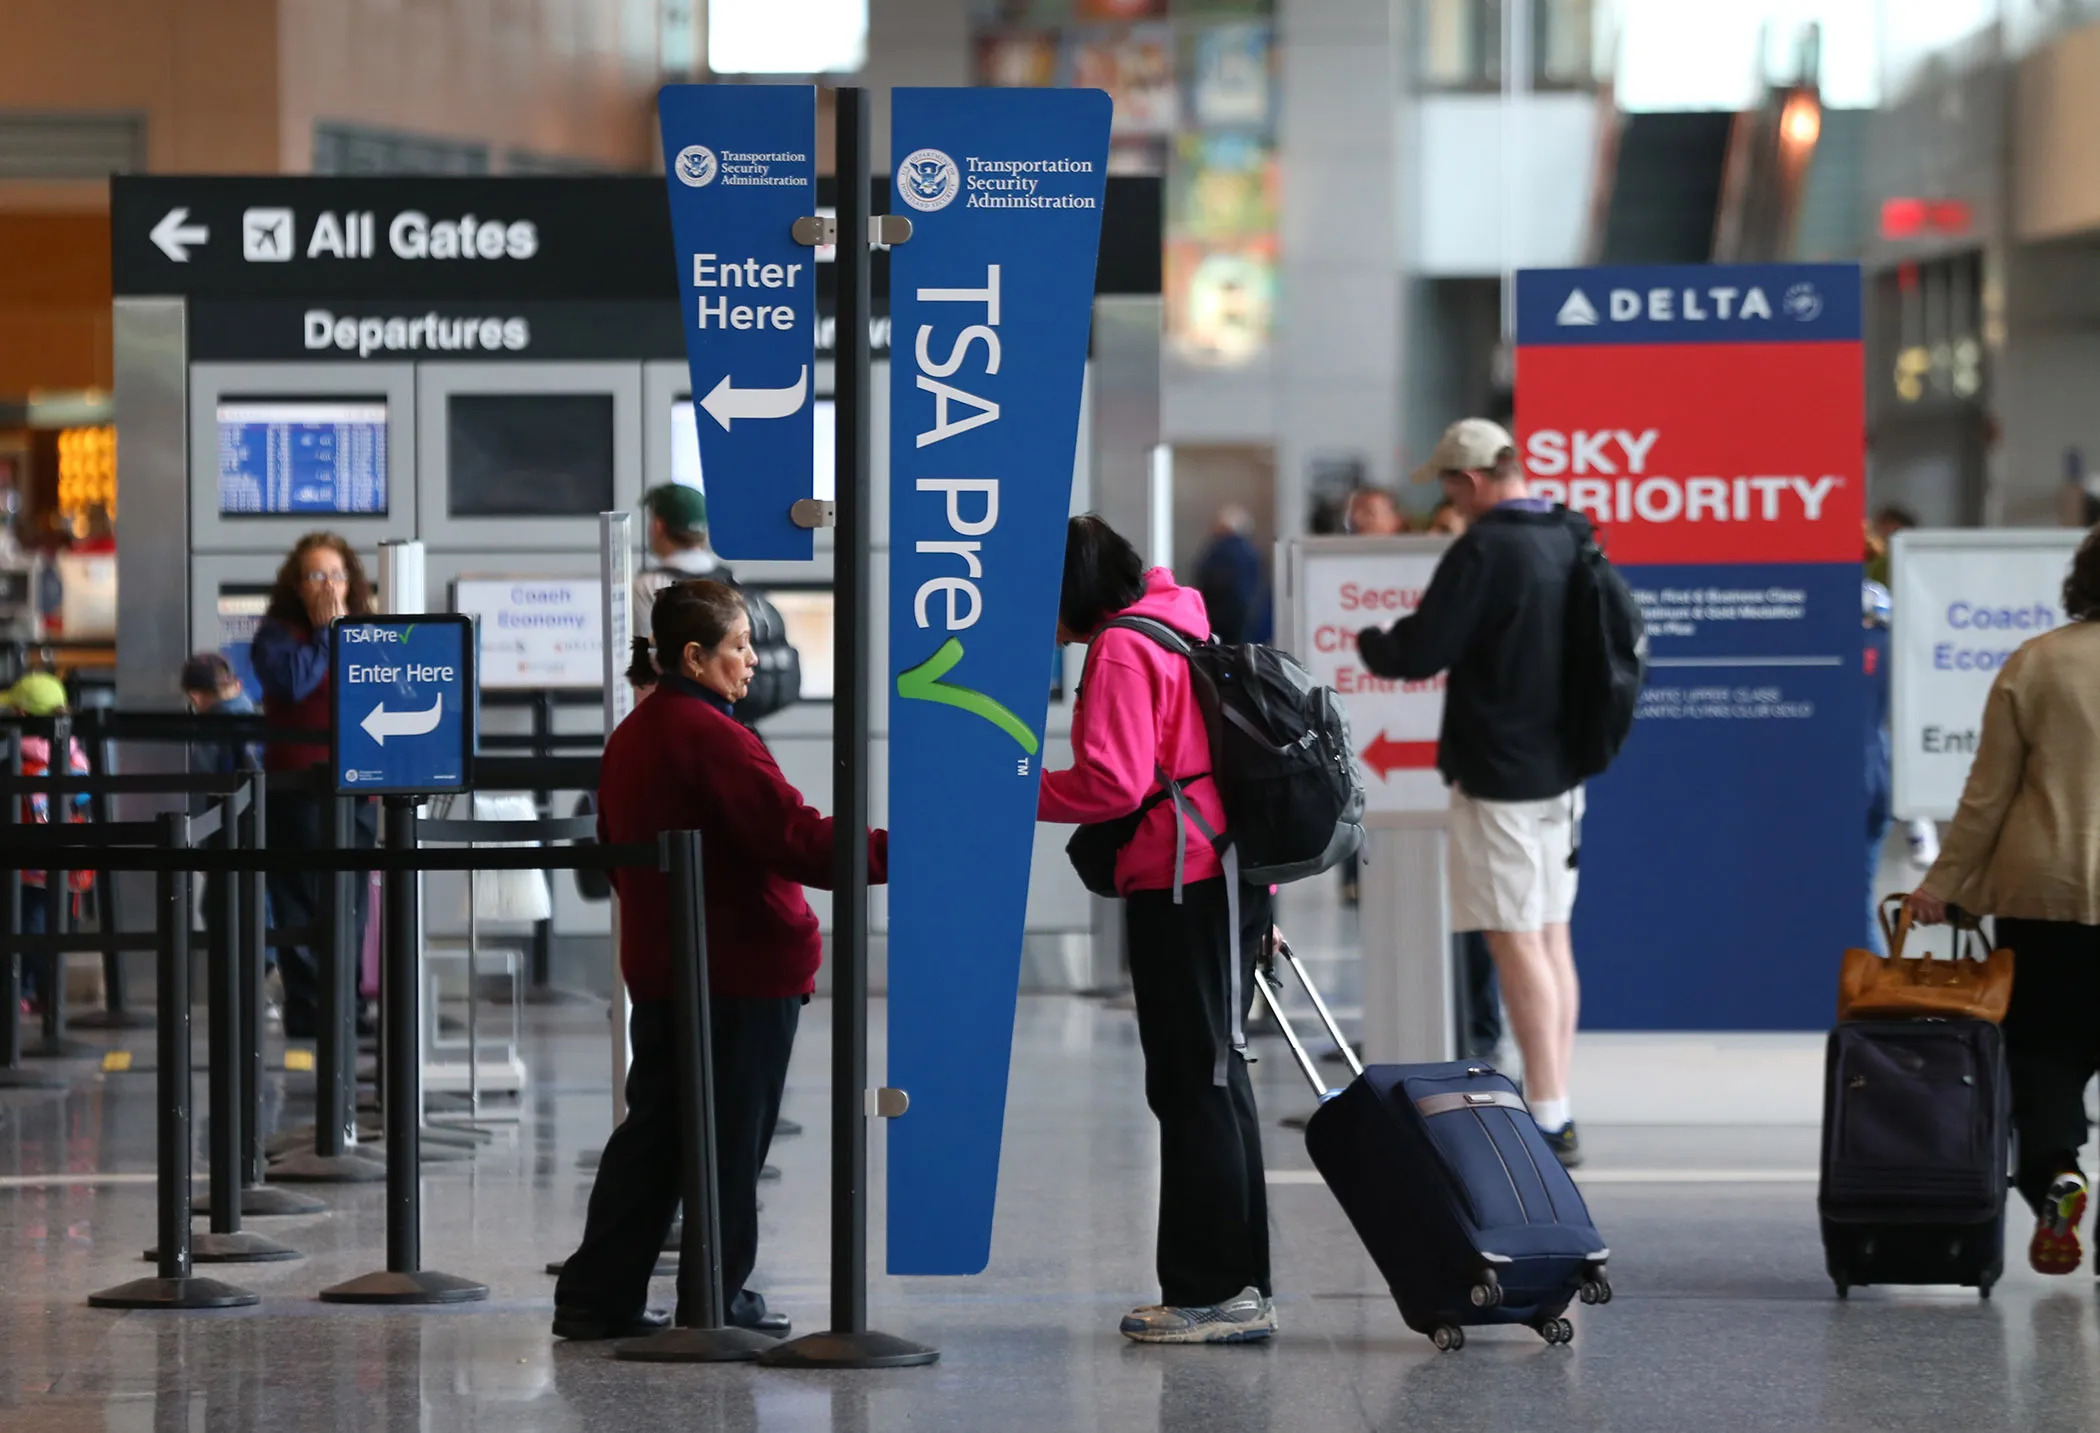 Global Entry vs TSA PreCheck - Application and Renewal - Recess 4